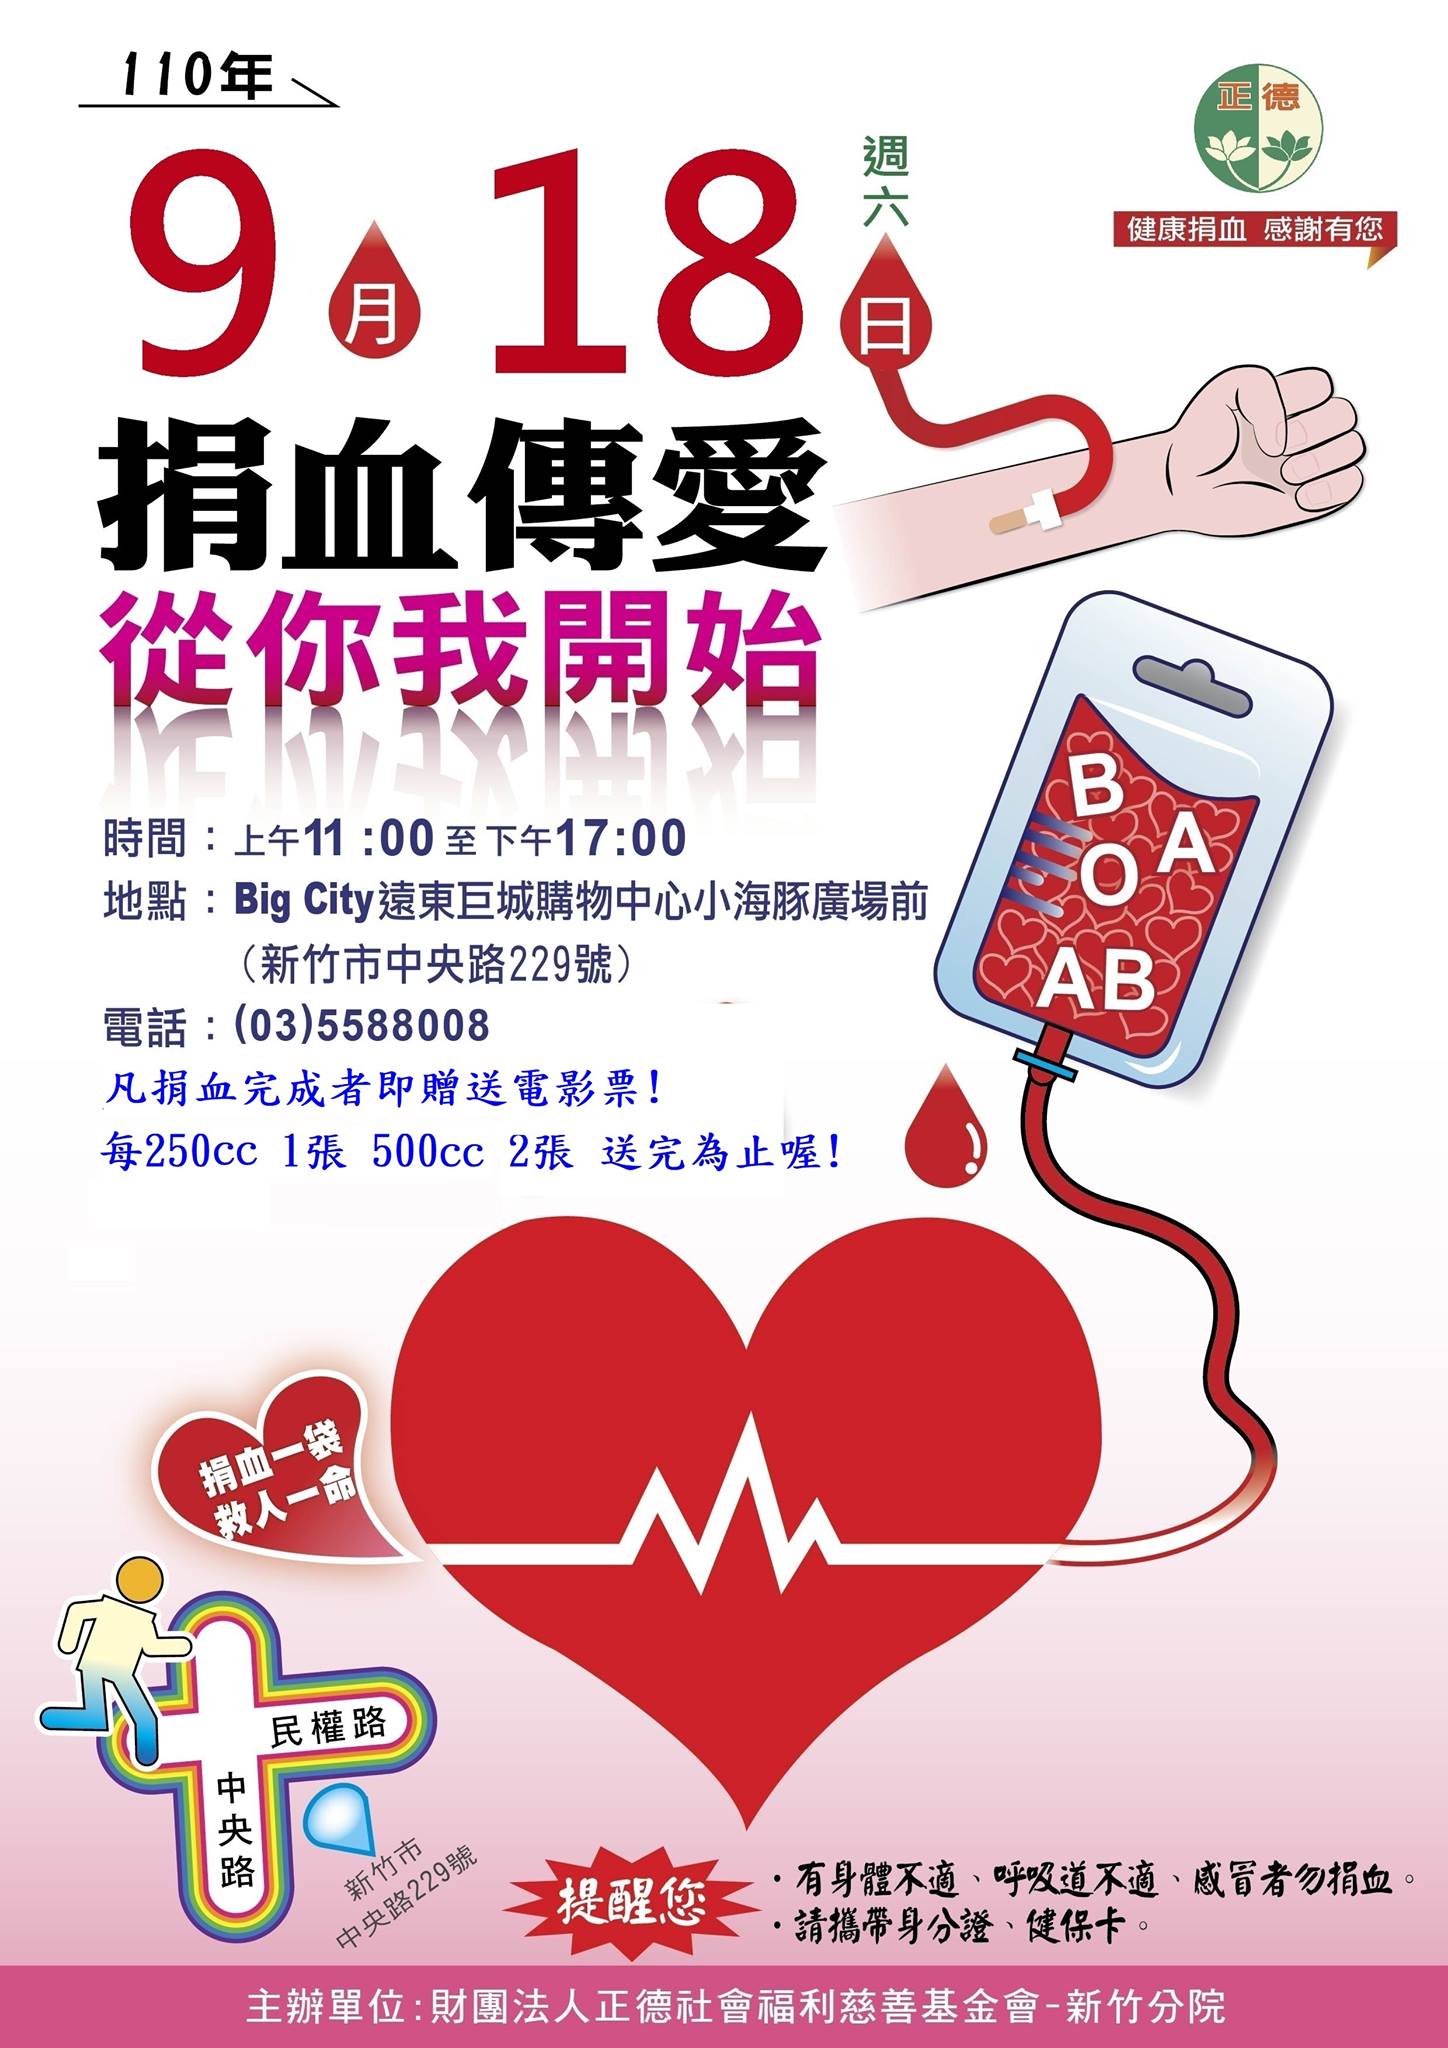 [情報] 9/18(六)新竹巨城捐血活動送電影票